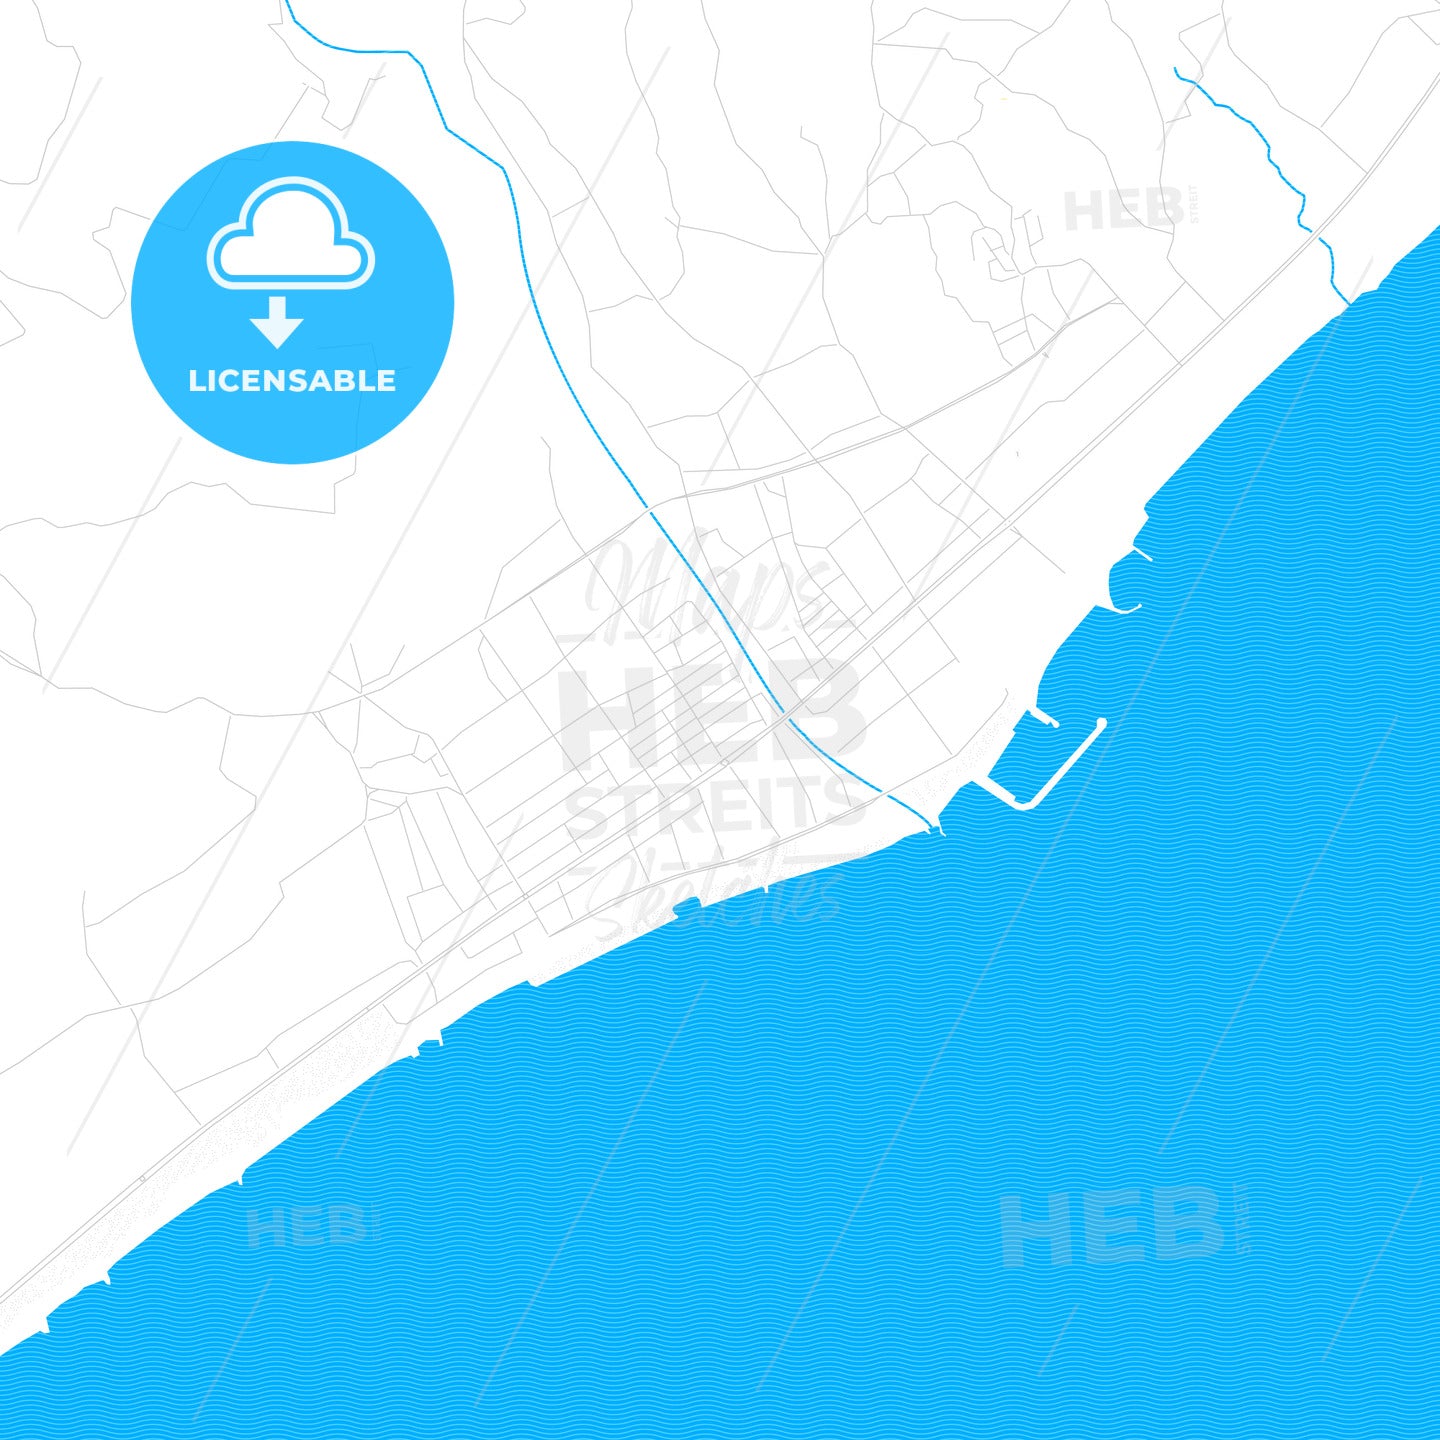 Erdemli, Turkey PDF vector map with water in focus